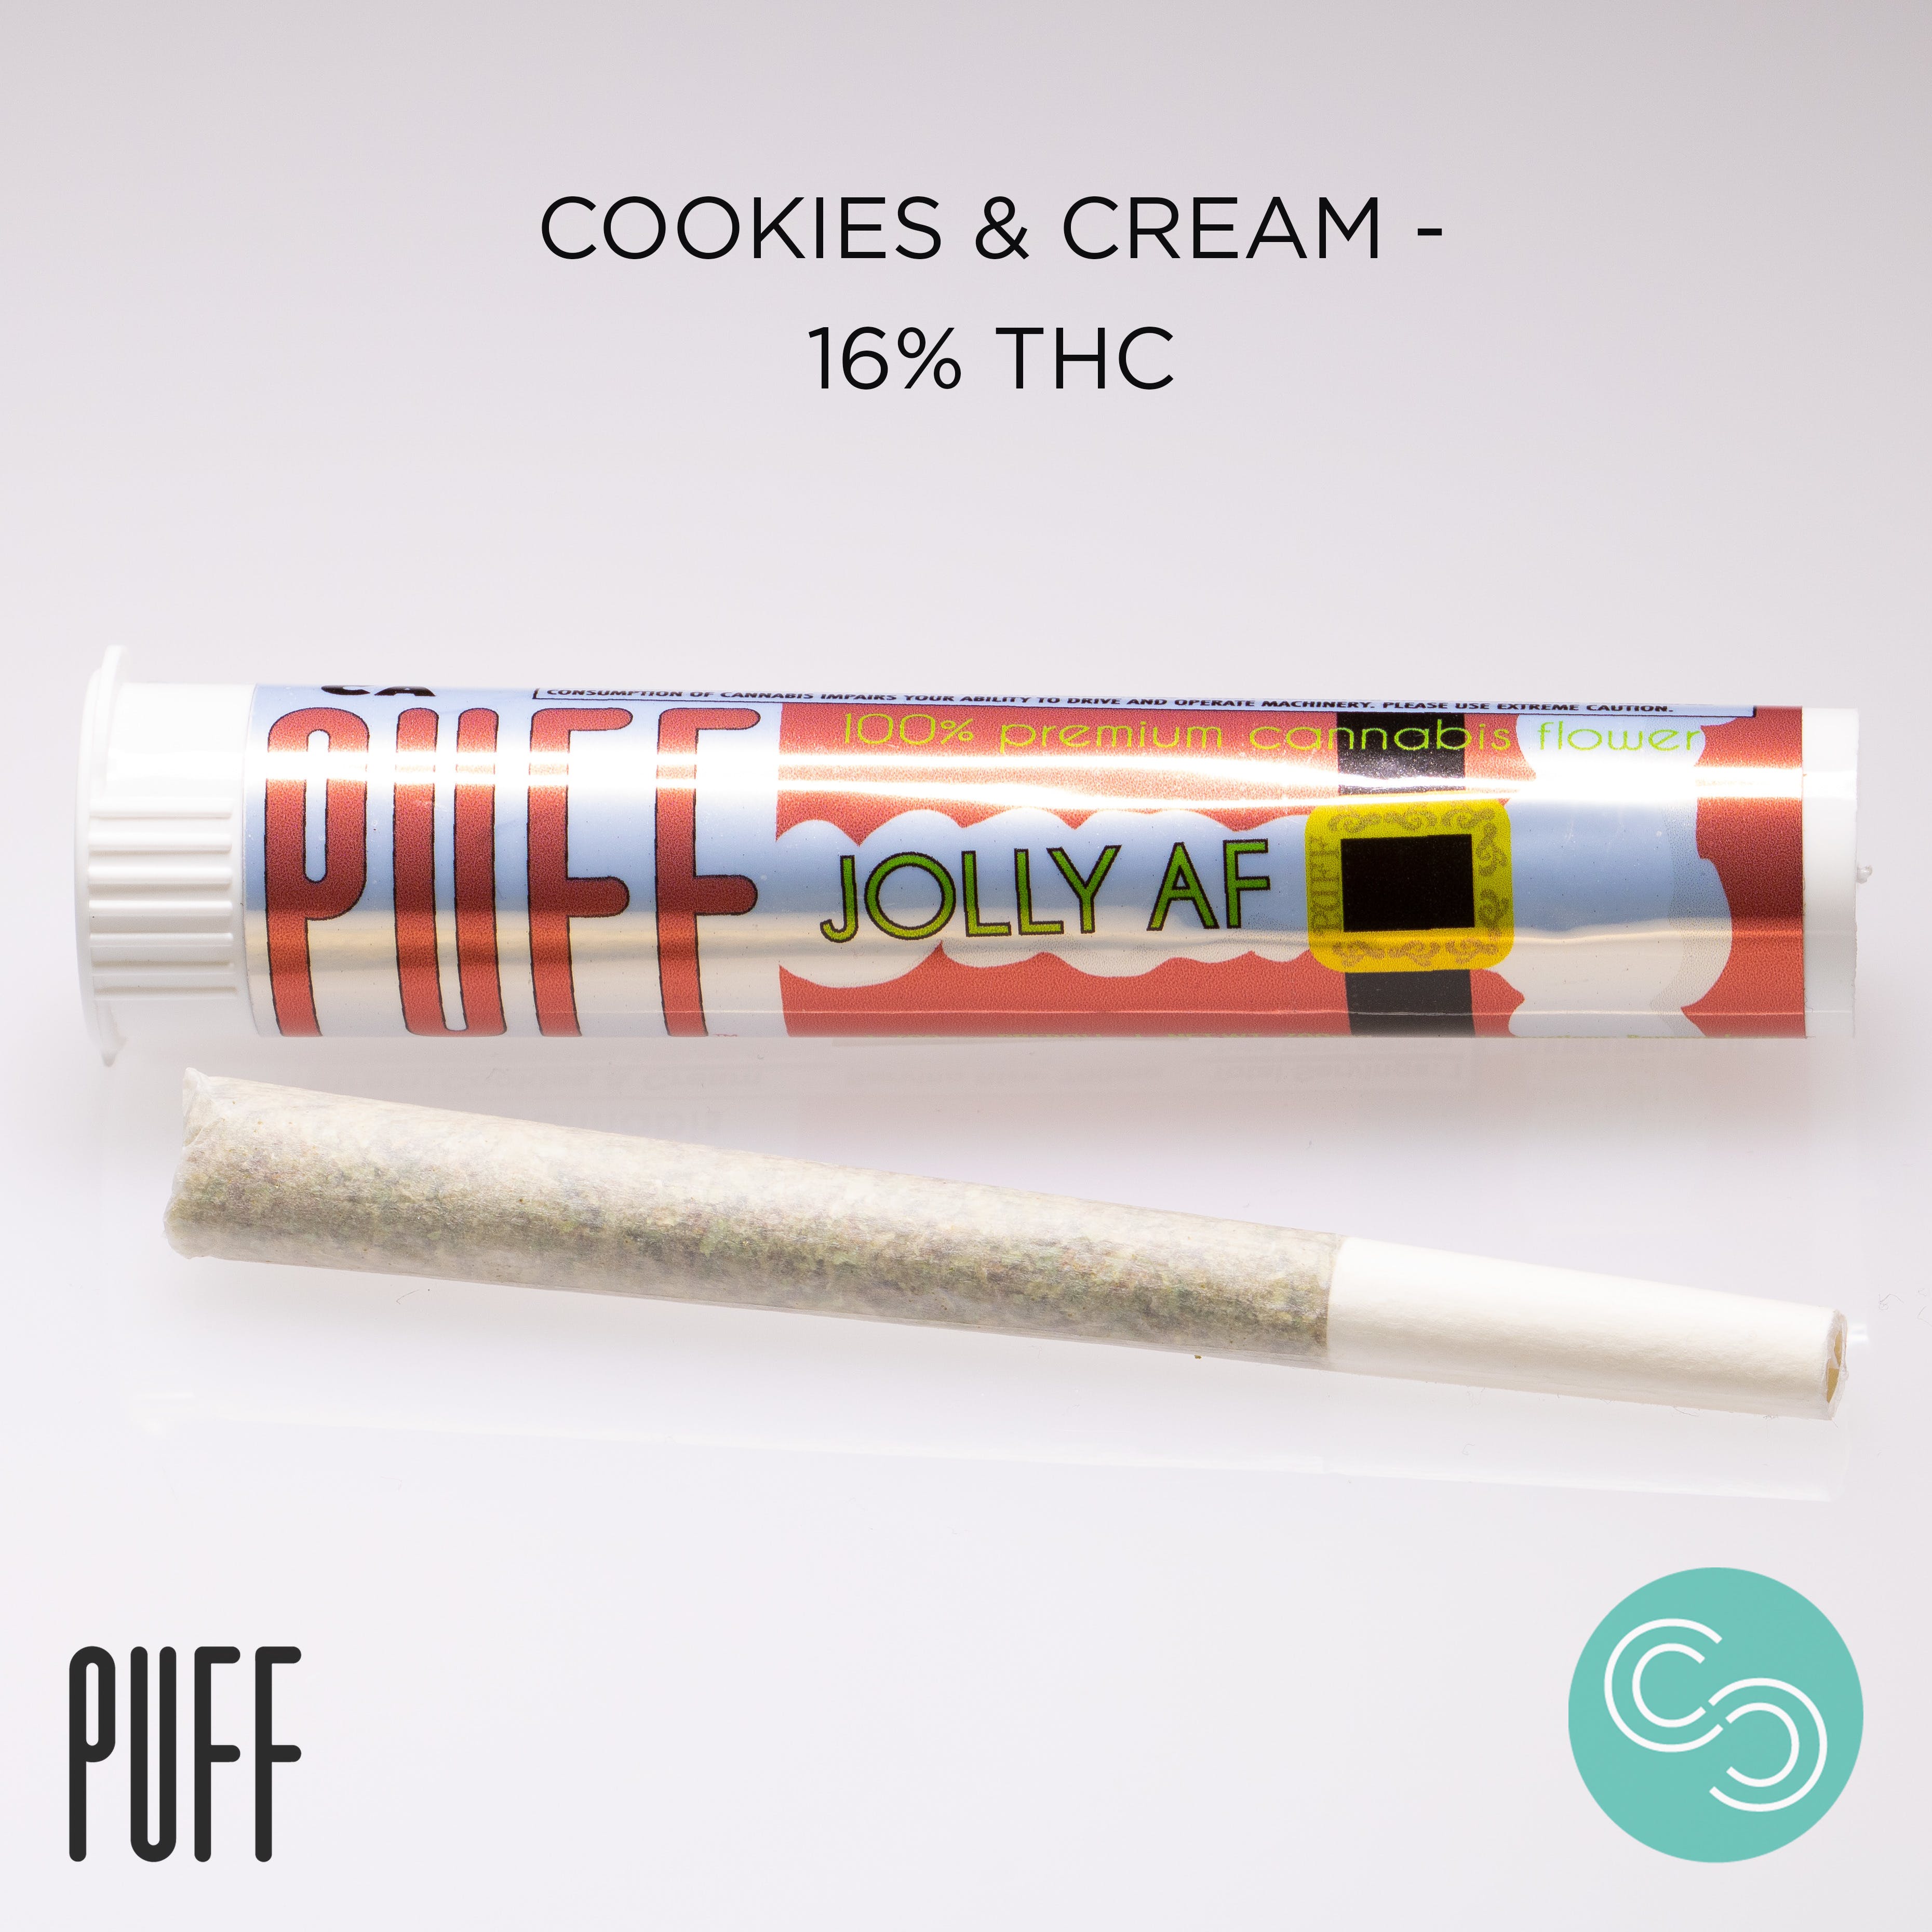 Puff - Cookies & Cream 16% THC